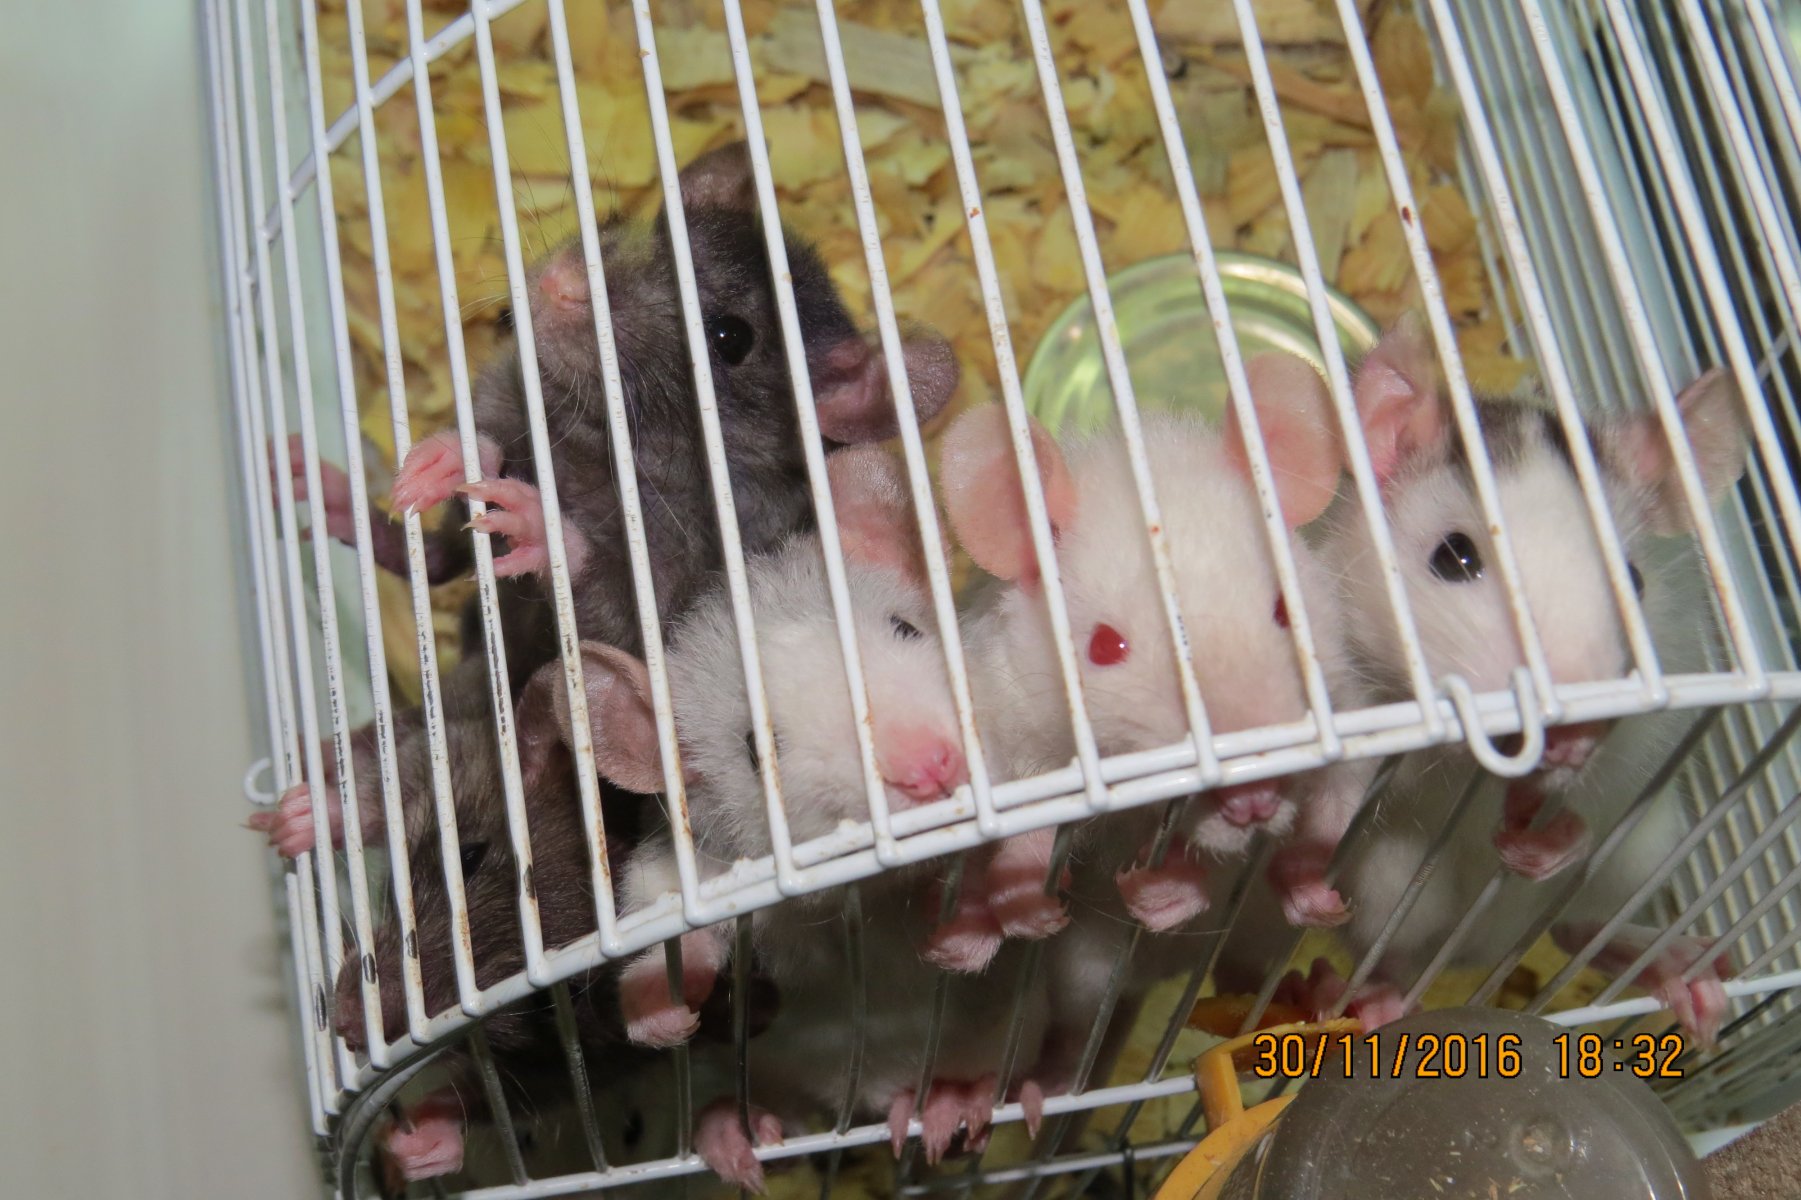 Сколько стоит домашняя крыса — цена содержания